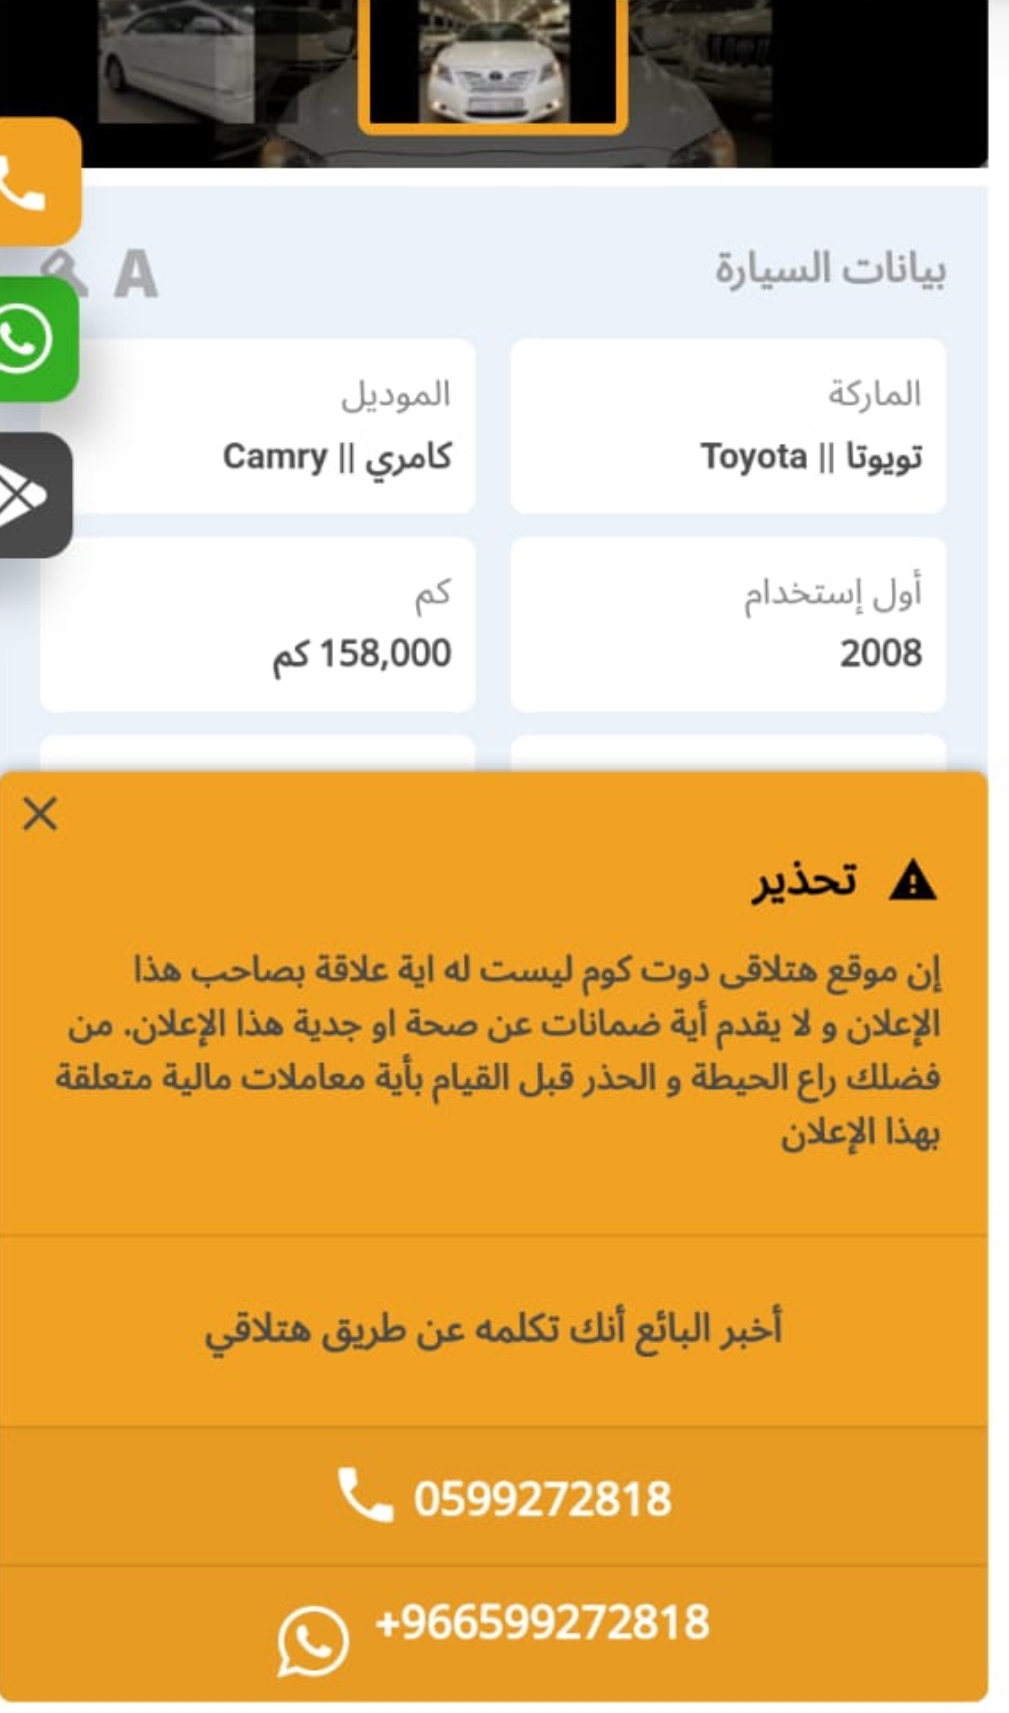 Screenshot ٢٠٢٣٠٥١٨ ٠٦٤٣٣٣ WhatsApp - مدونة التقنية العربية